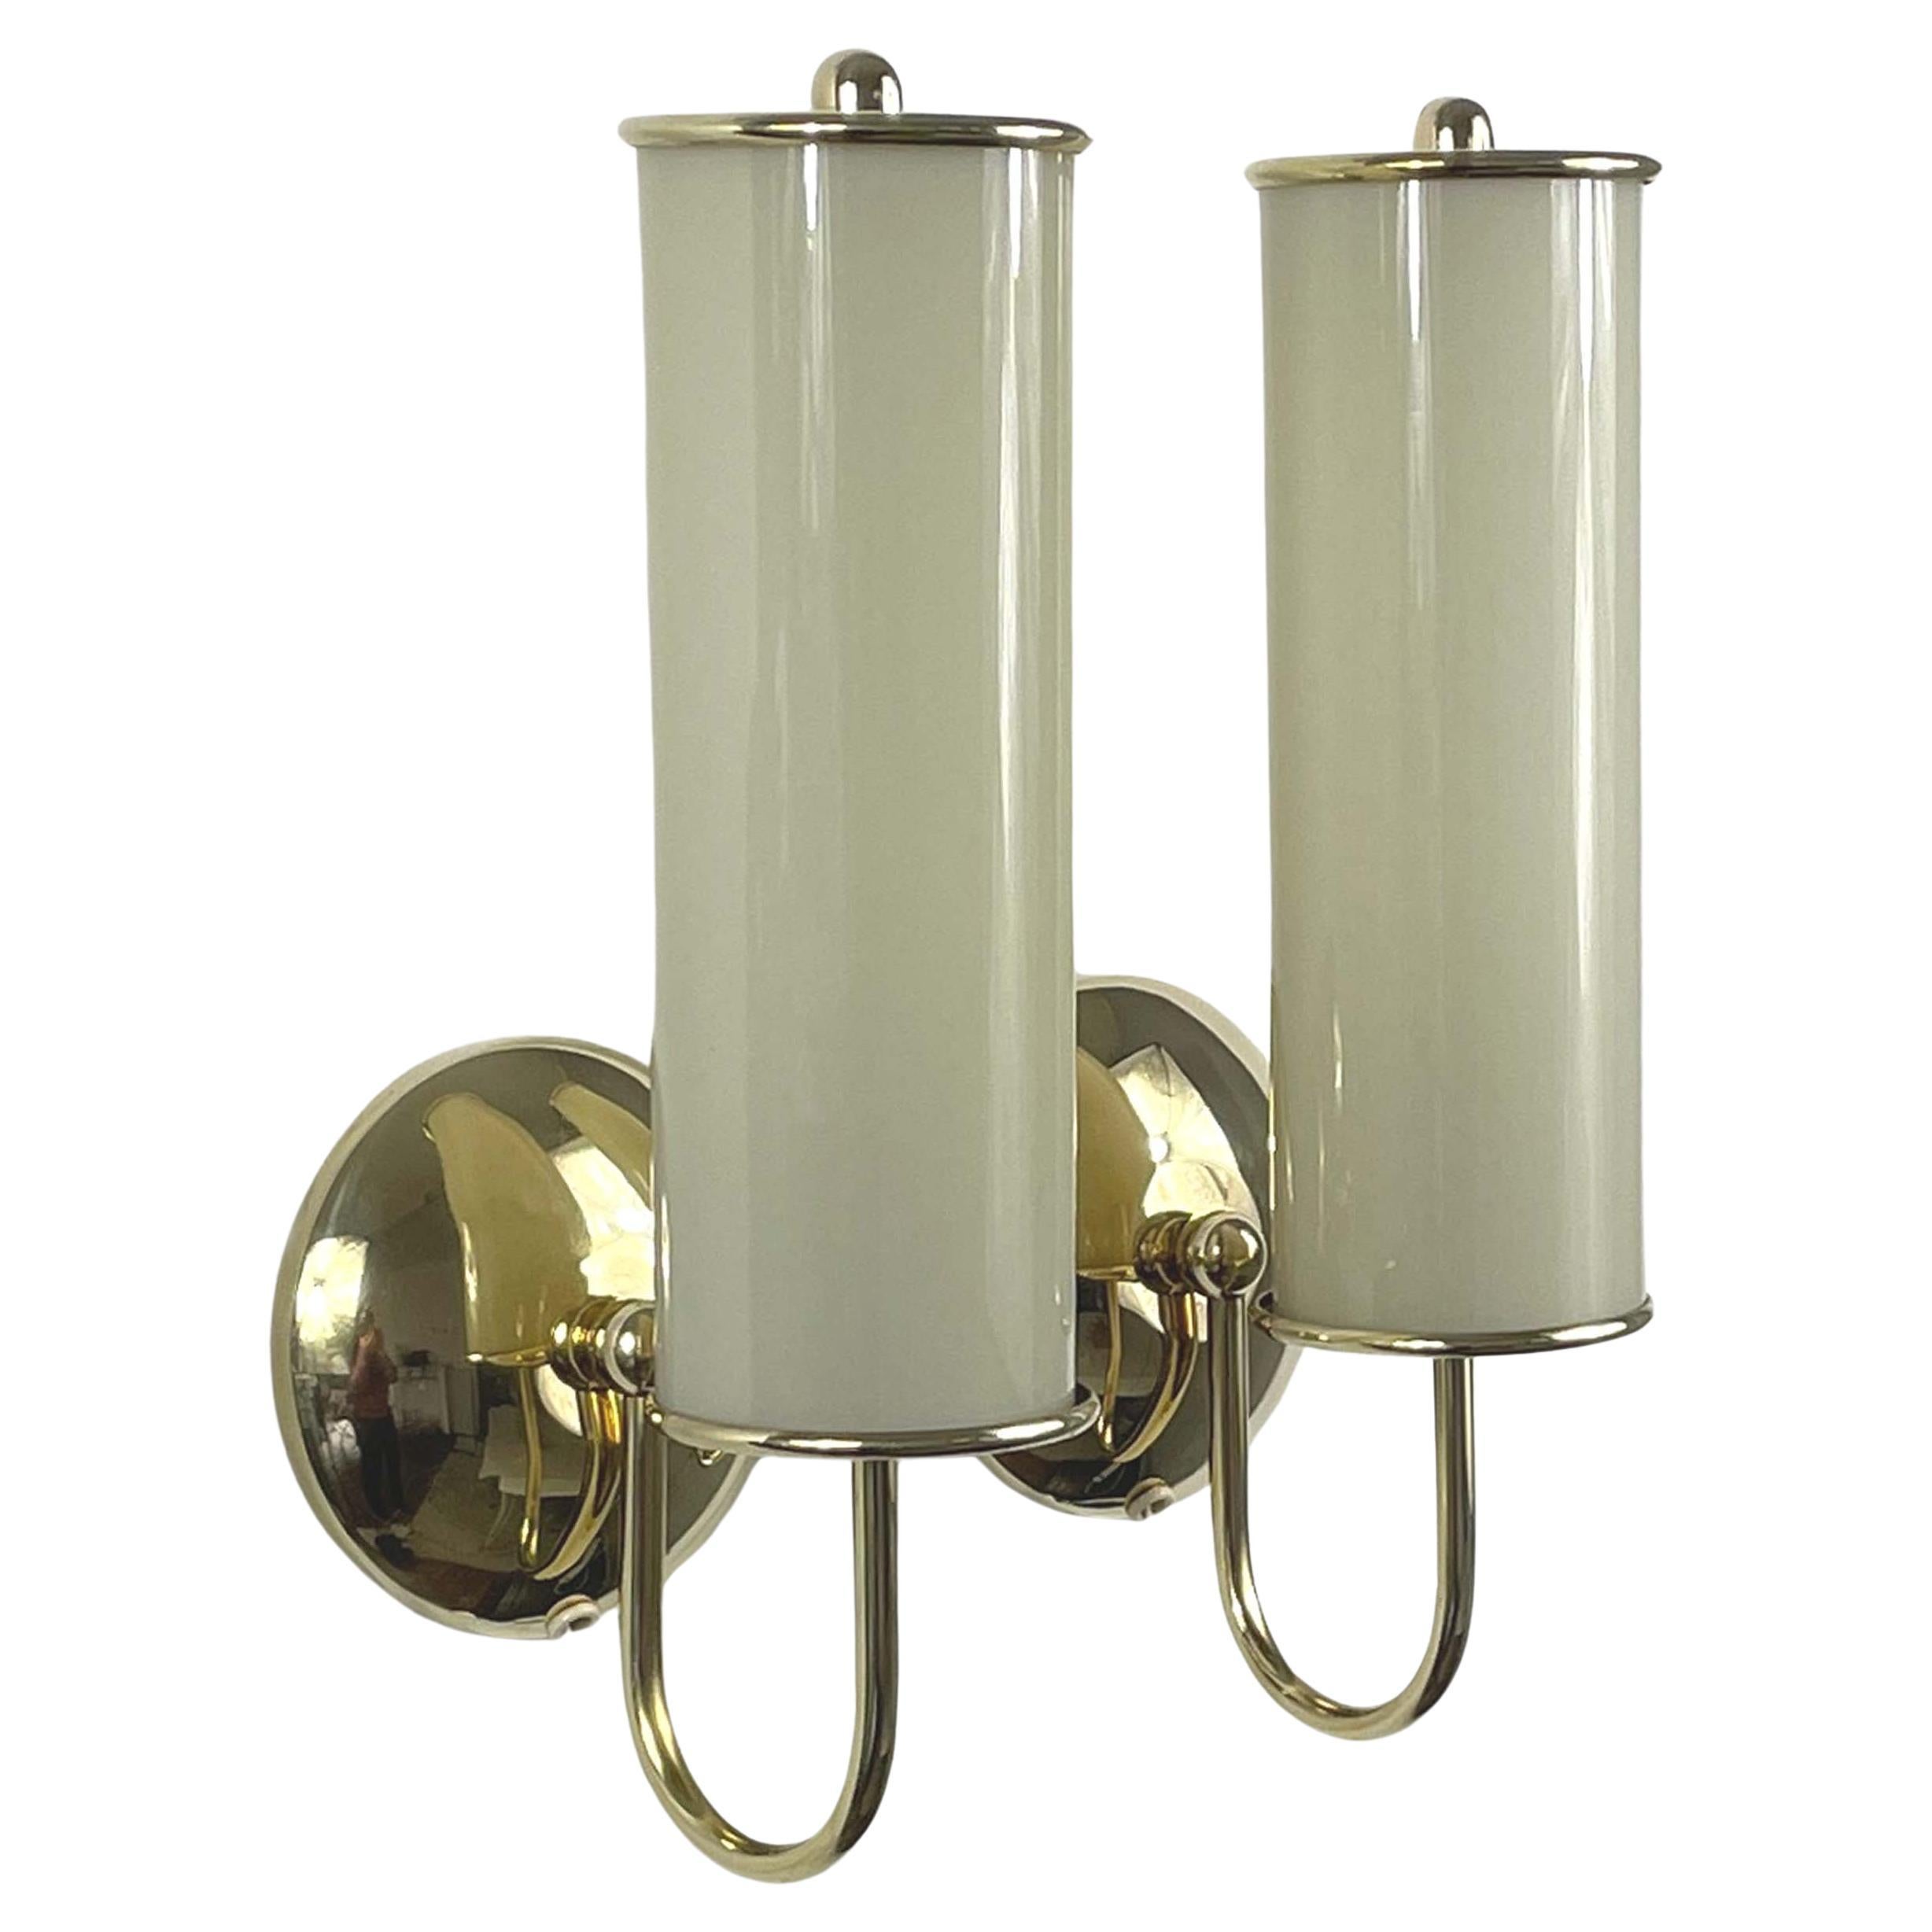 Art Deco Tubular Opaline Glass & Brass Sconces, Germany 1930s For Sale